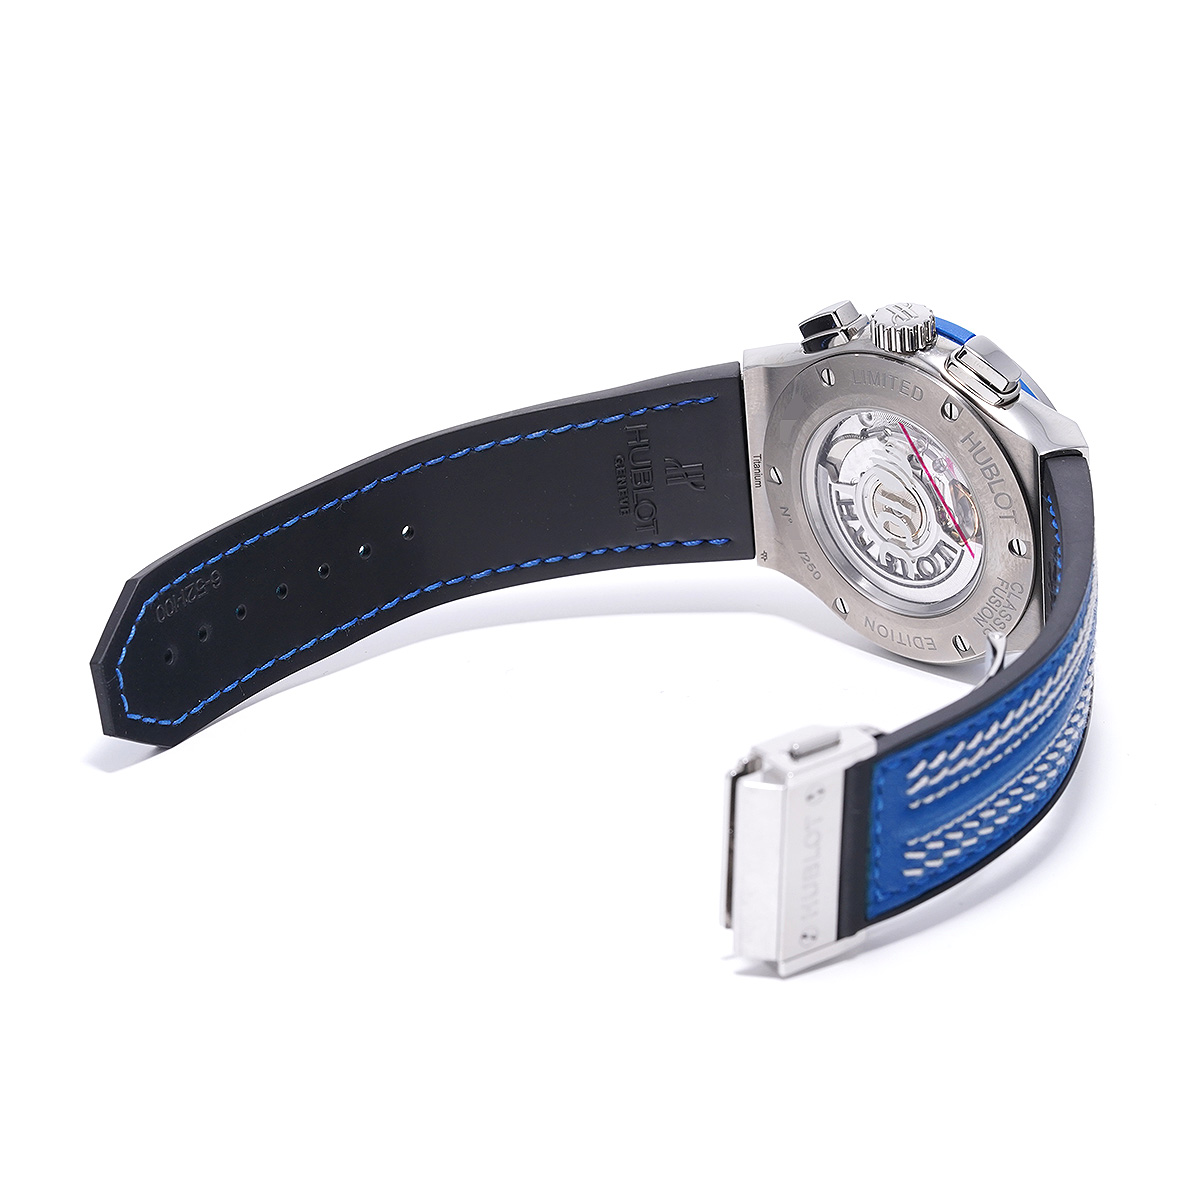 ウブロ HUBLOT 525.NX.0129.VR.ICC16 スケルトン メンズ 腕時計